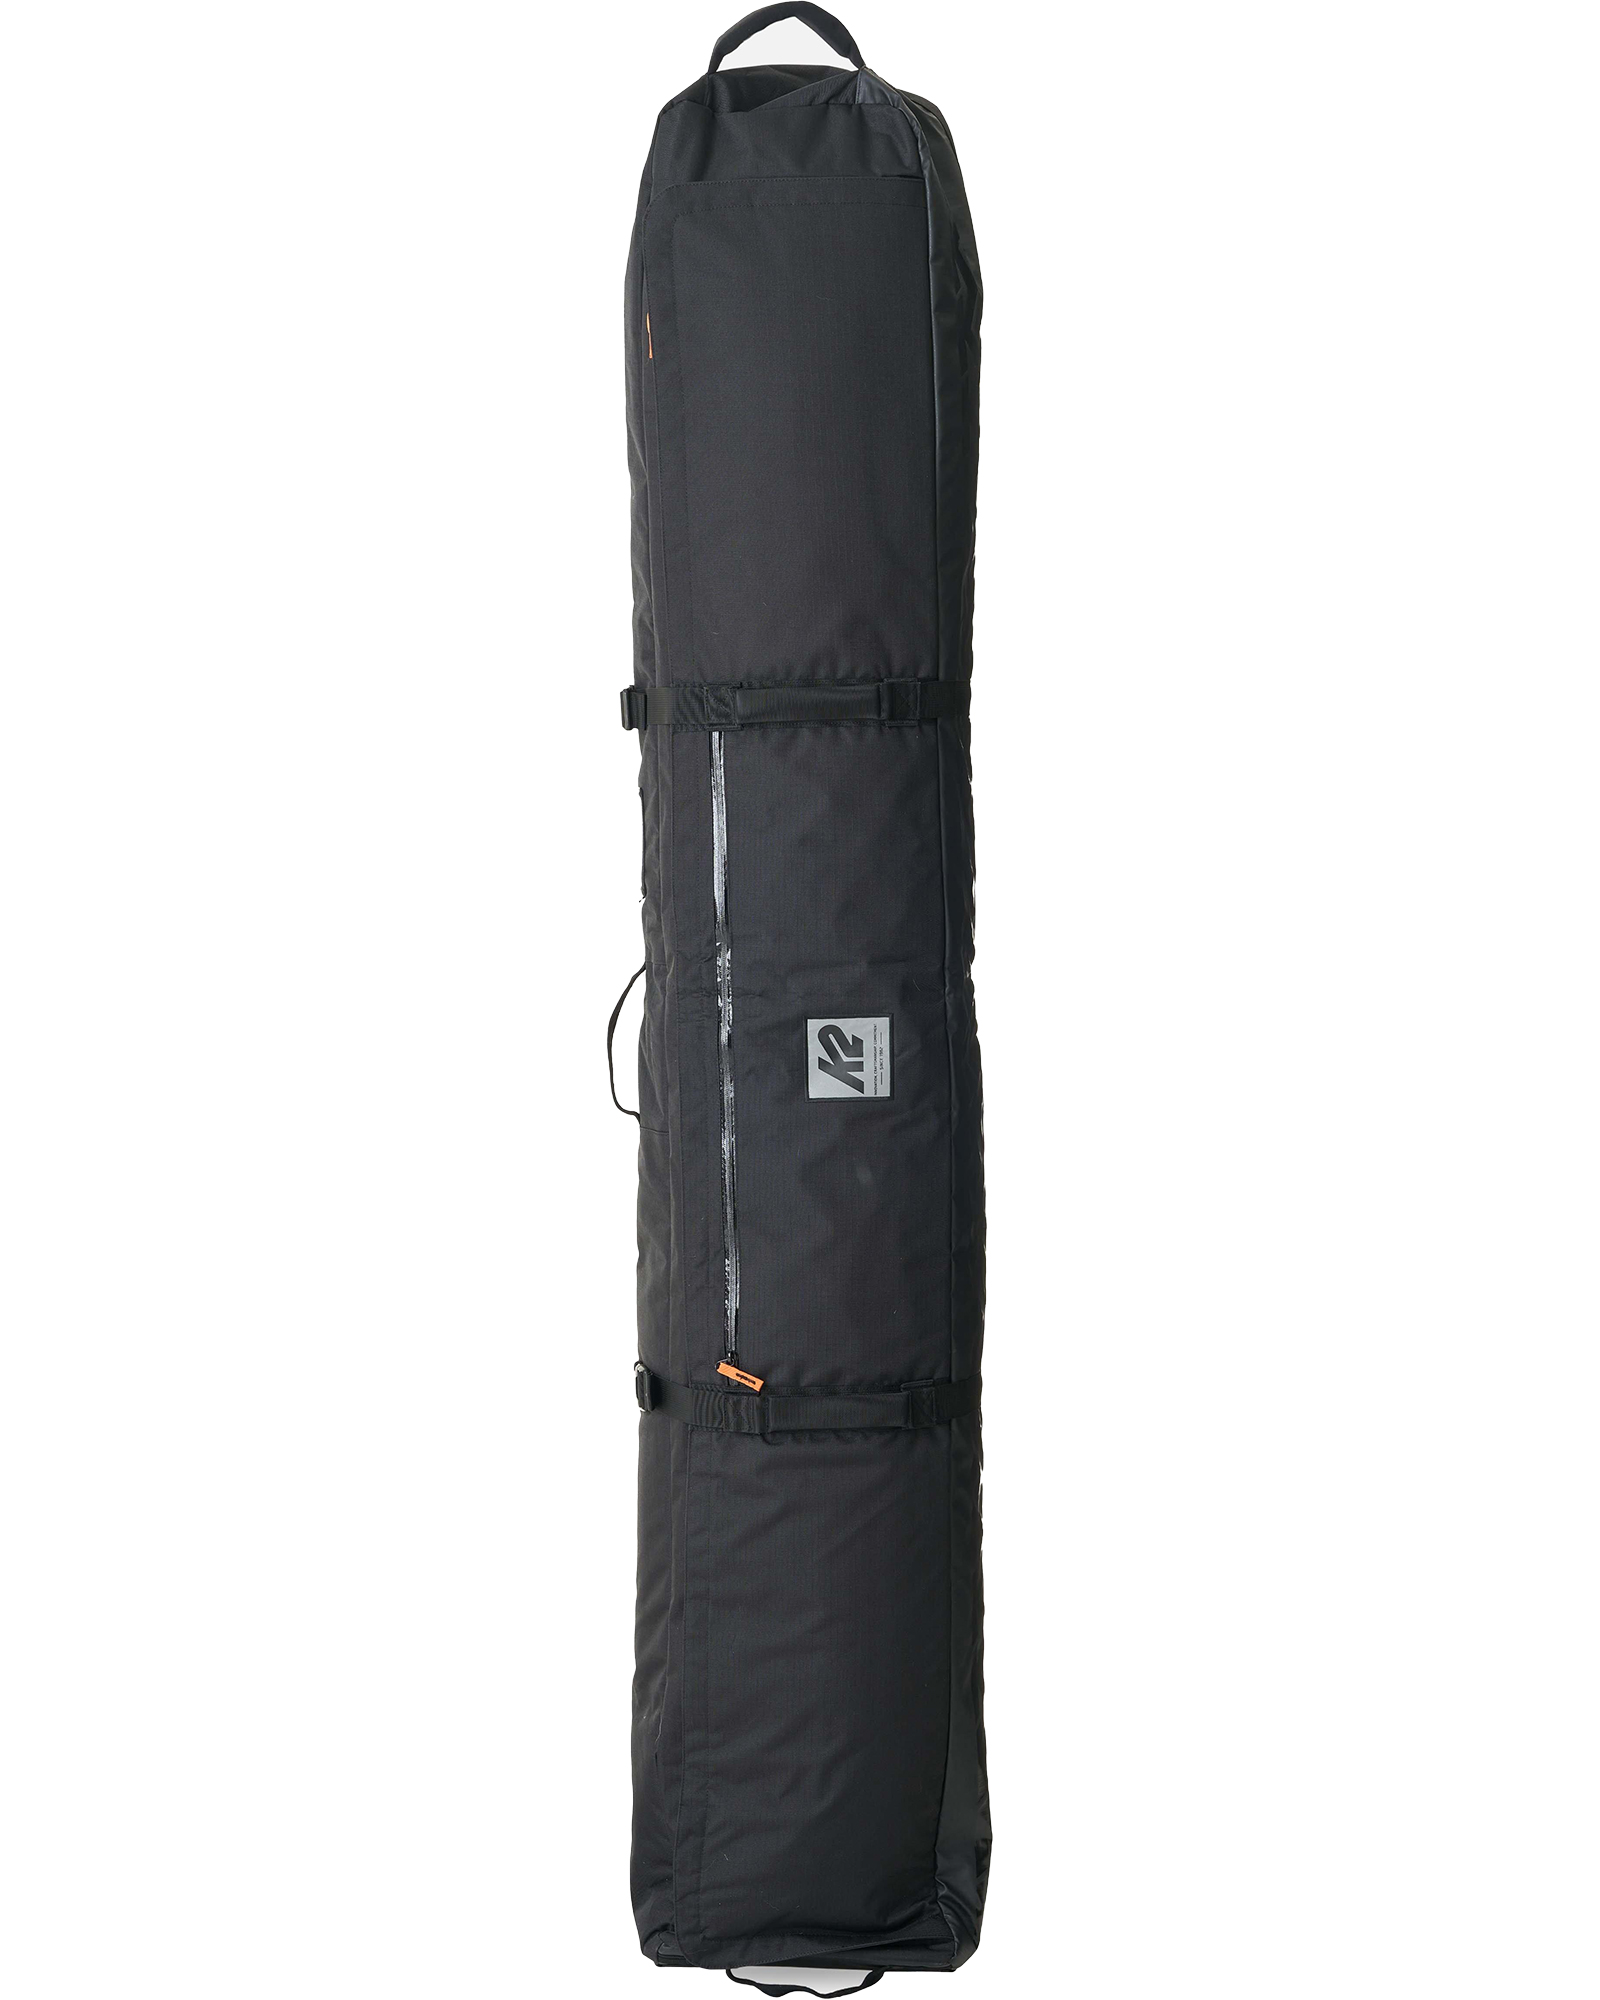 K2 Roller Ski Bag - black 200cm